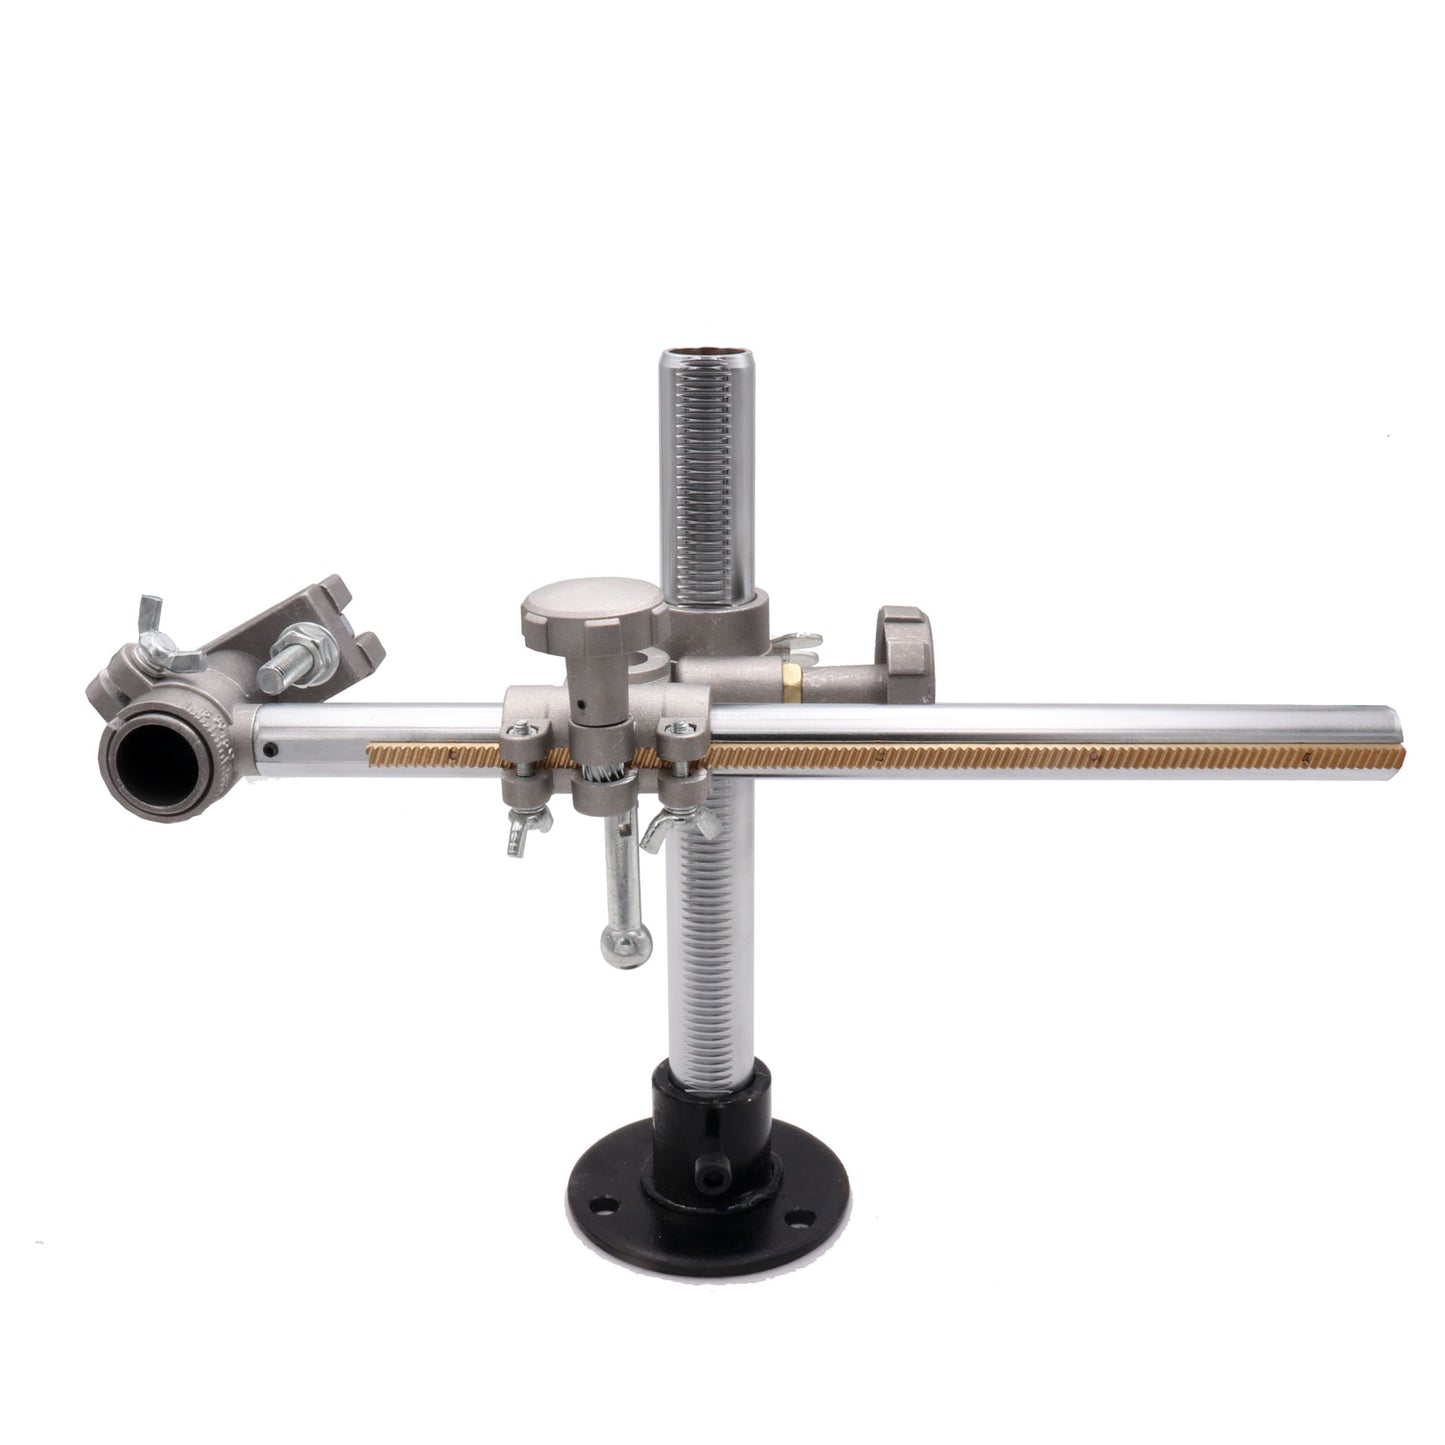 Adjustable height 30*30cm Torch support bracket Welding gun mount torch holder